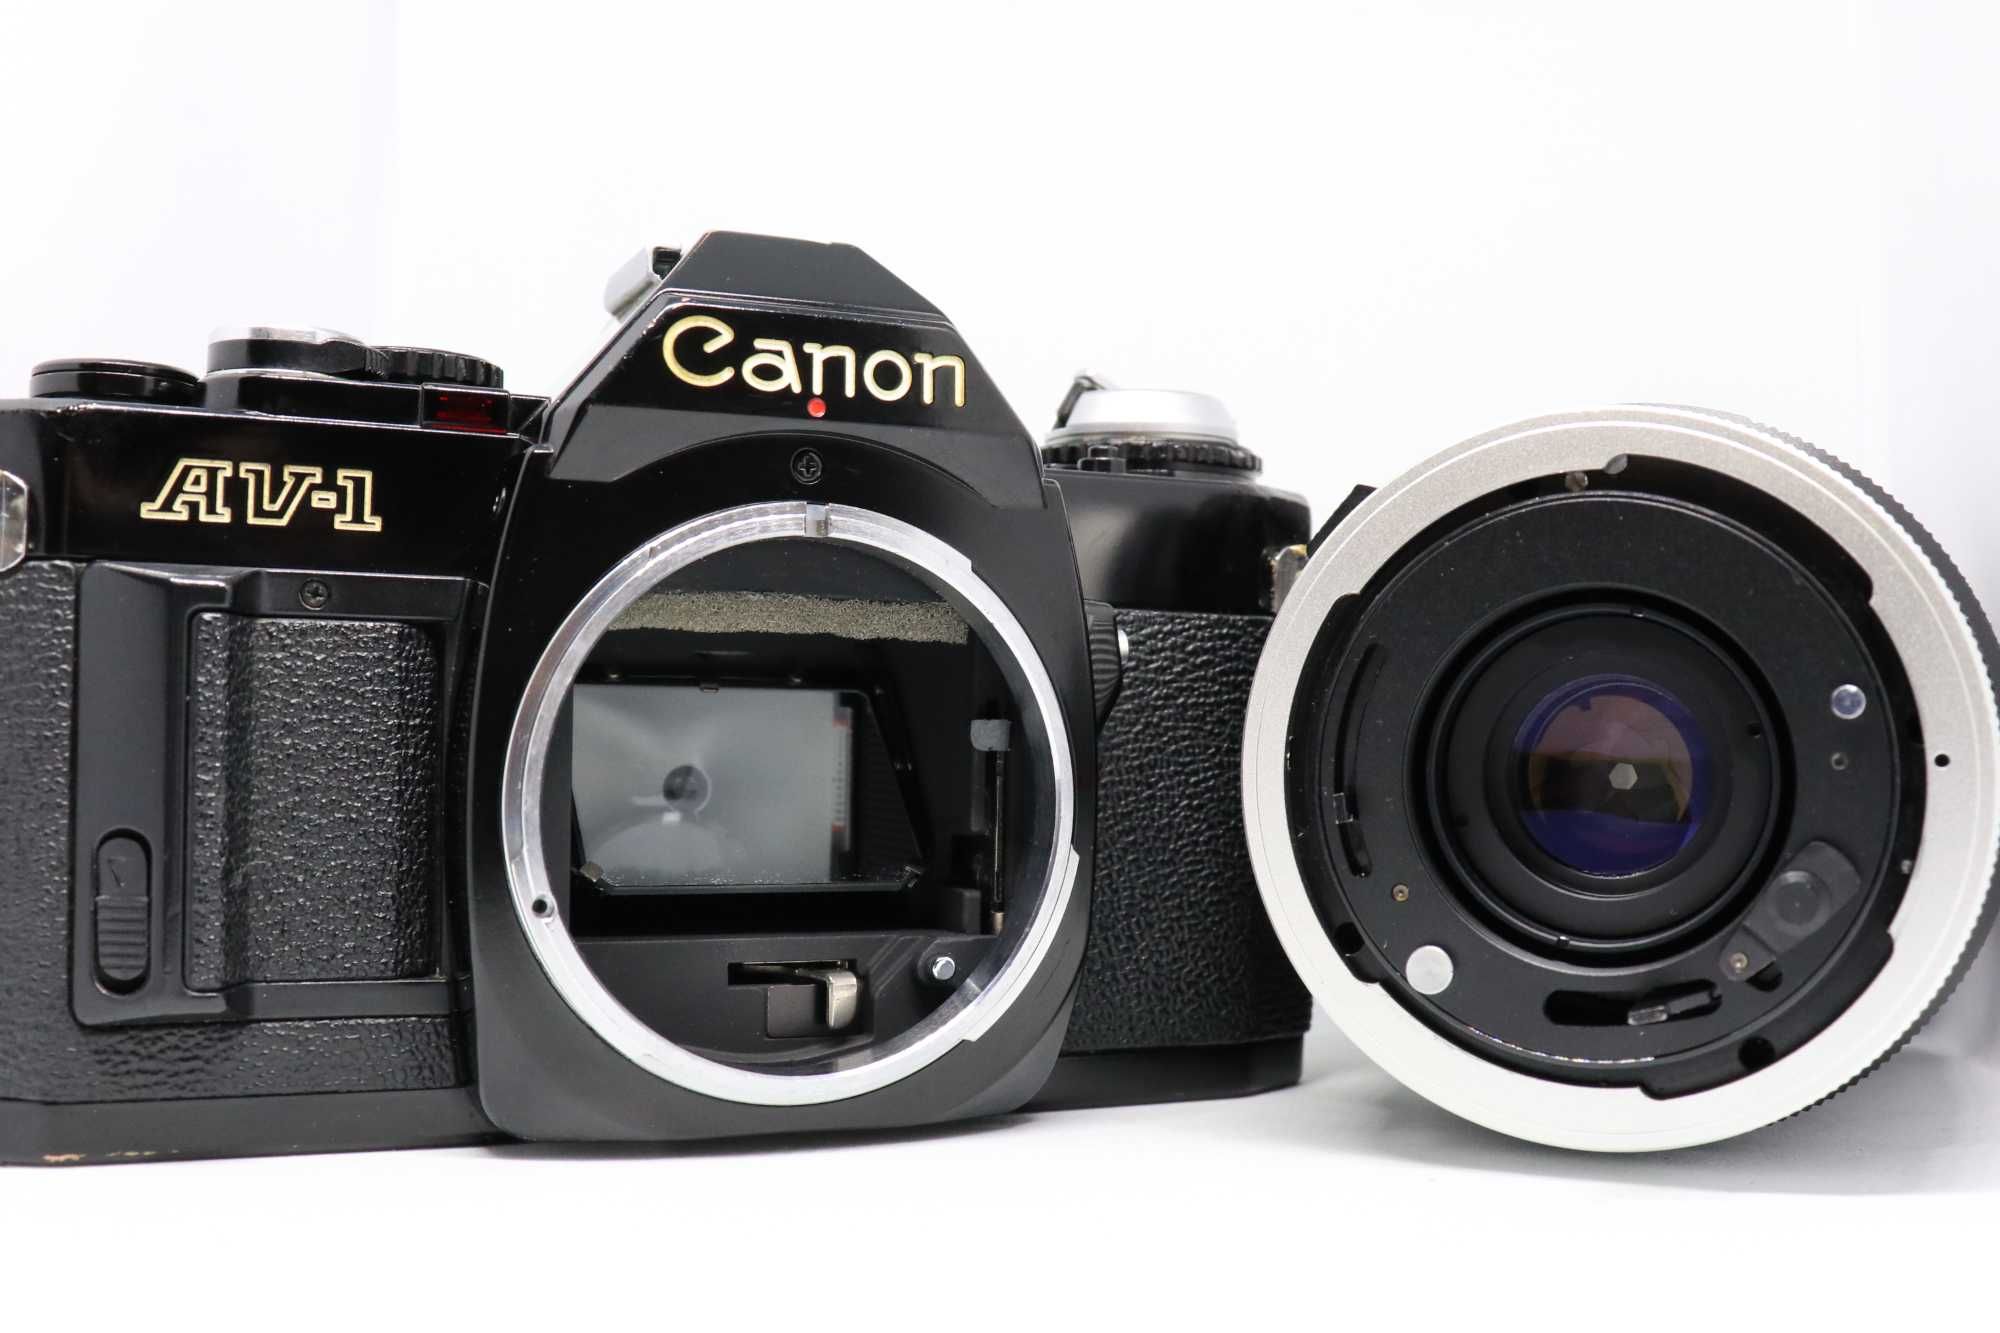 SLR Canon AV-1 + Zoom FD 35-100mm (a funcionar)